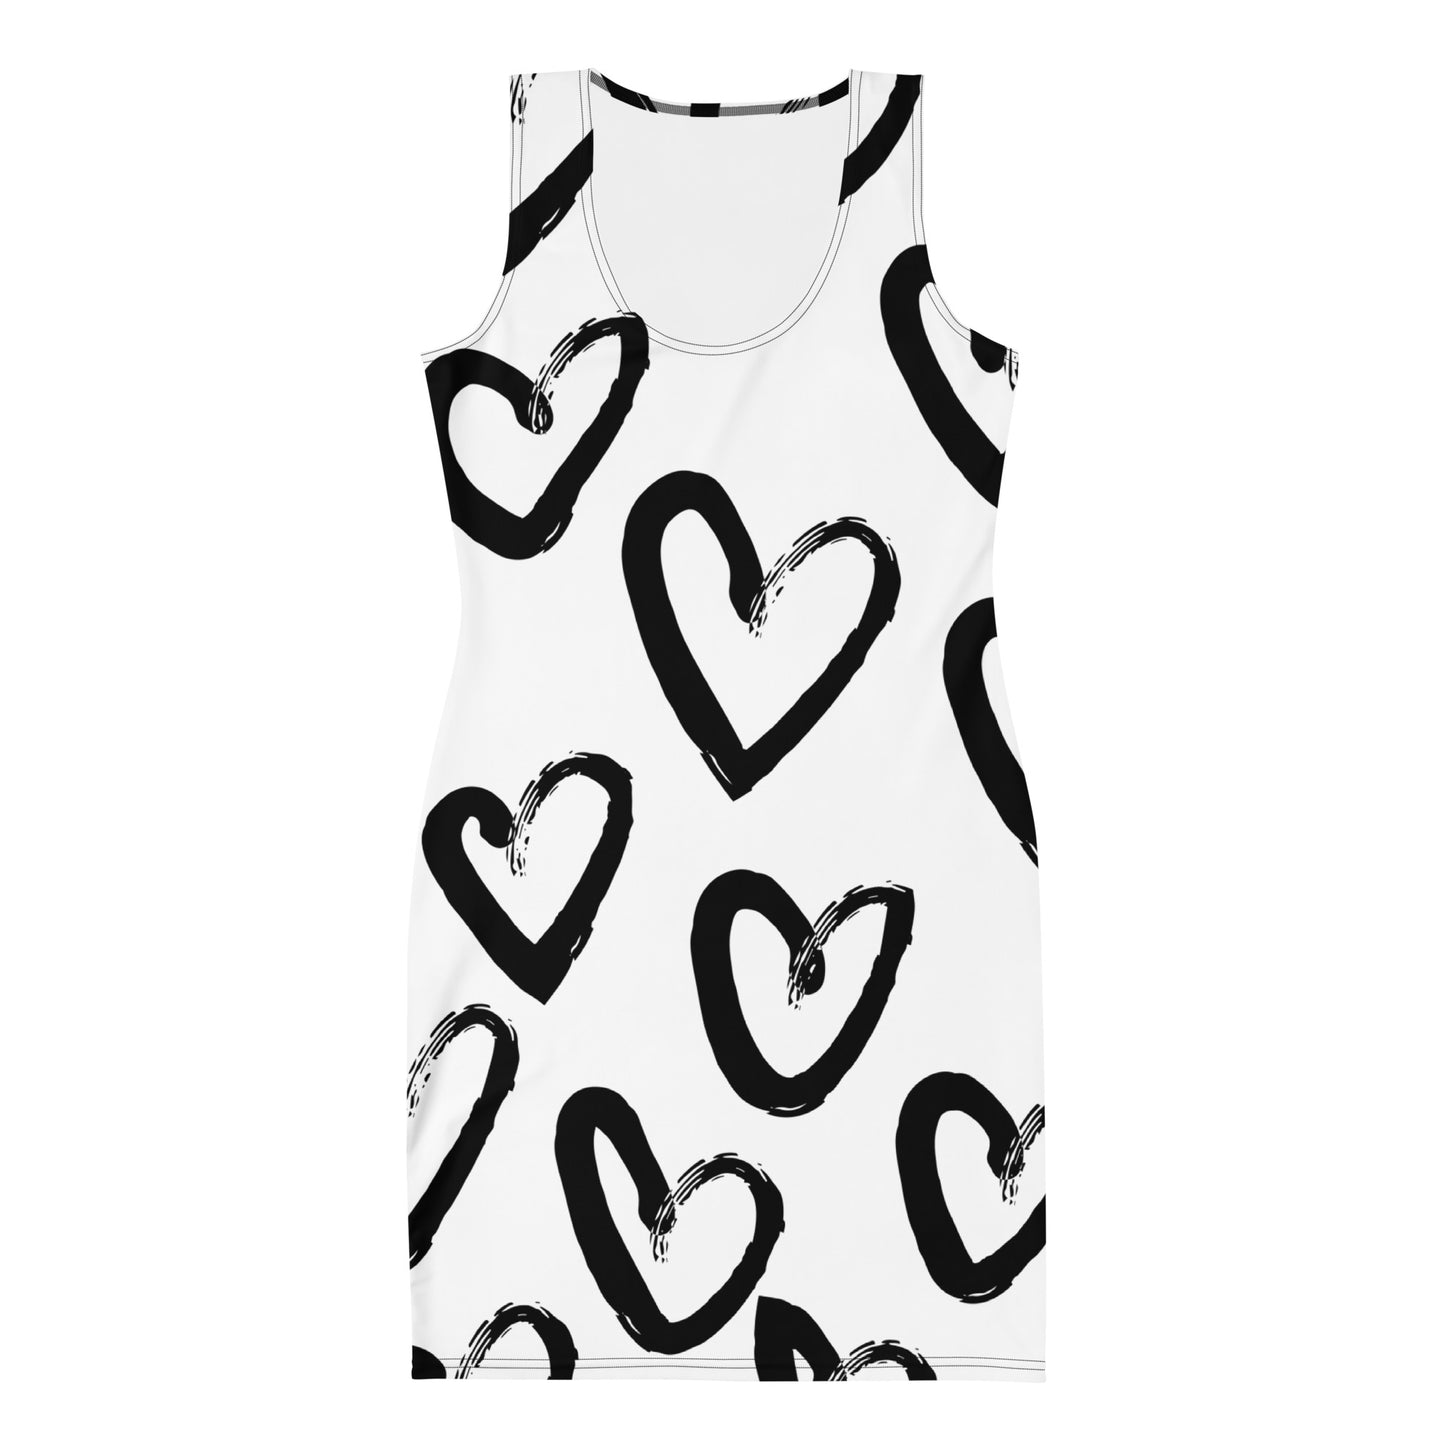 "Heart" patterned dress